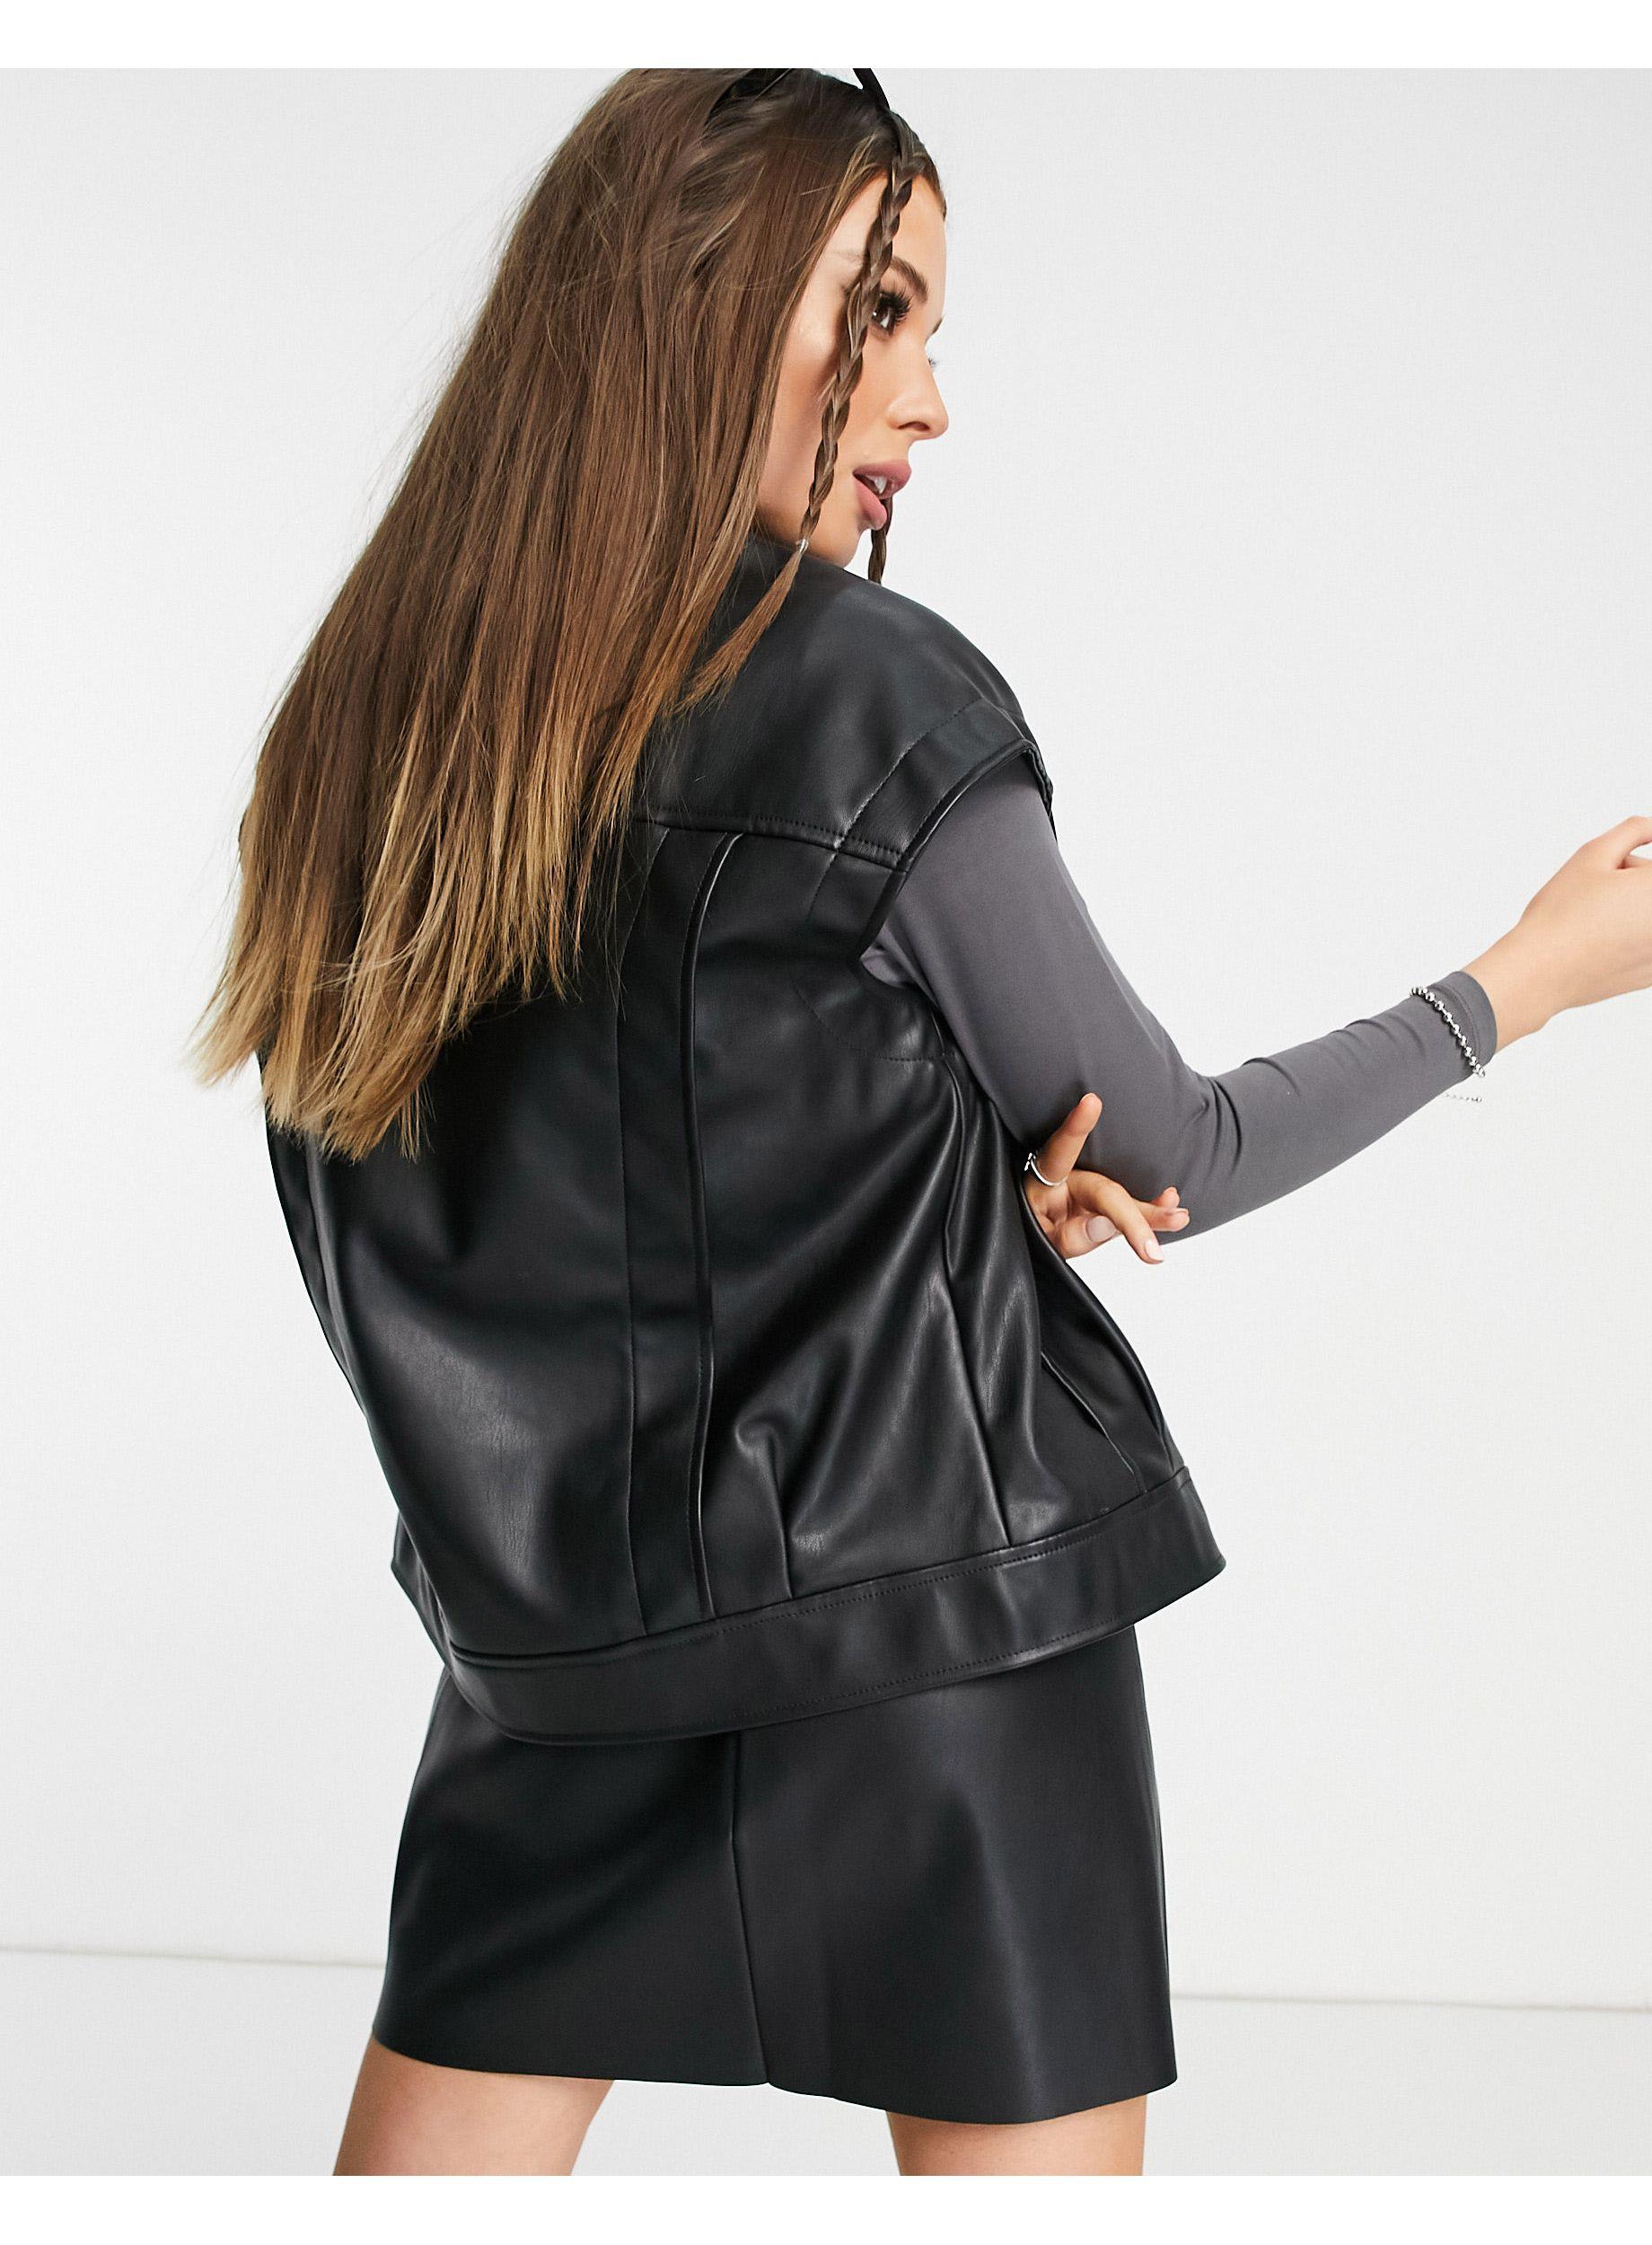 Bershka Sleeveless Faux Leather Jacket in Black | Lyst